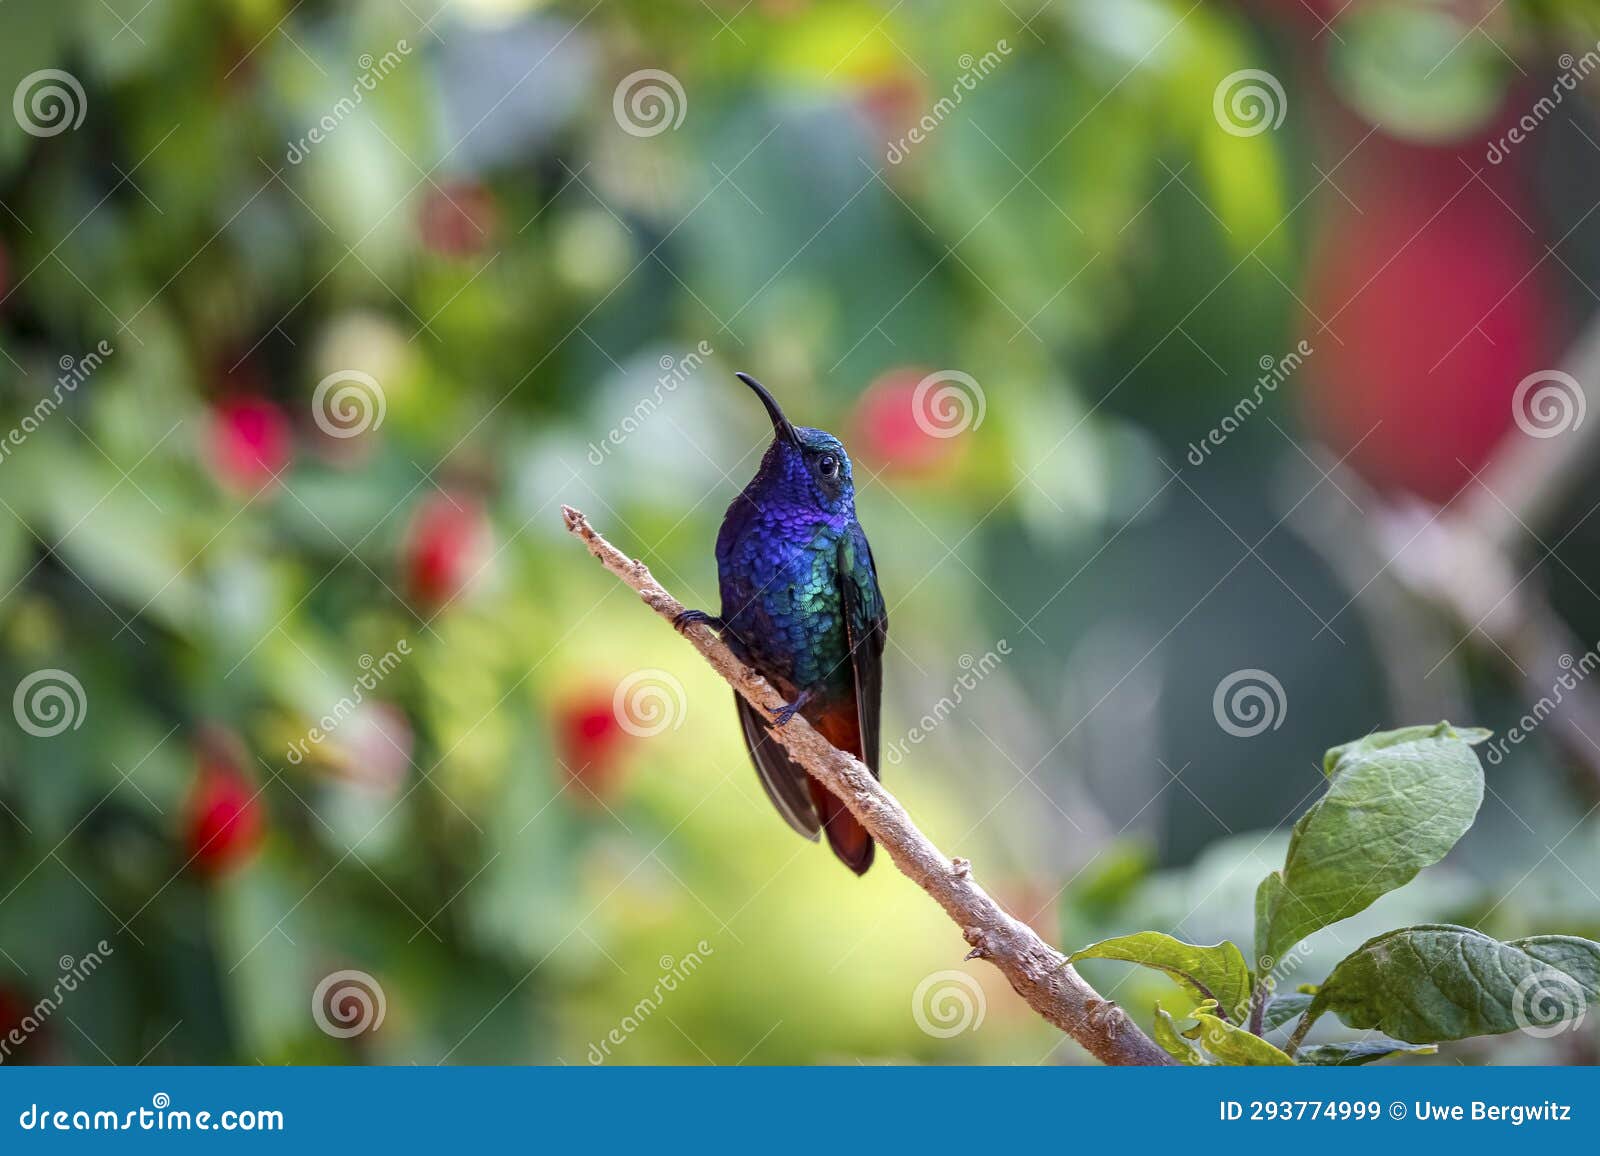 sparkling violetear (colibri coruscans), rogitama biodiversidad, colombia